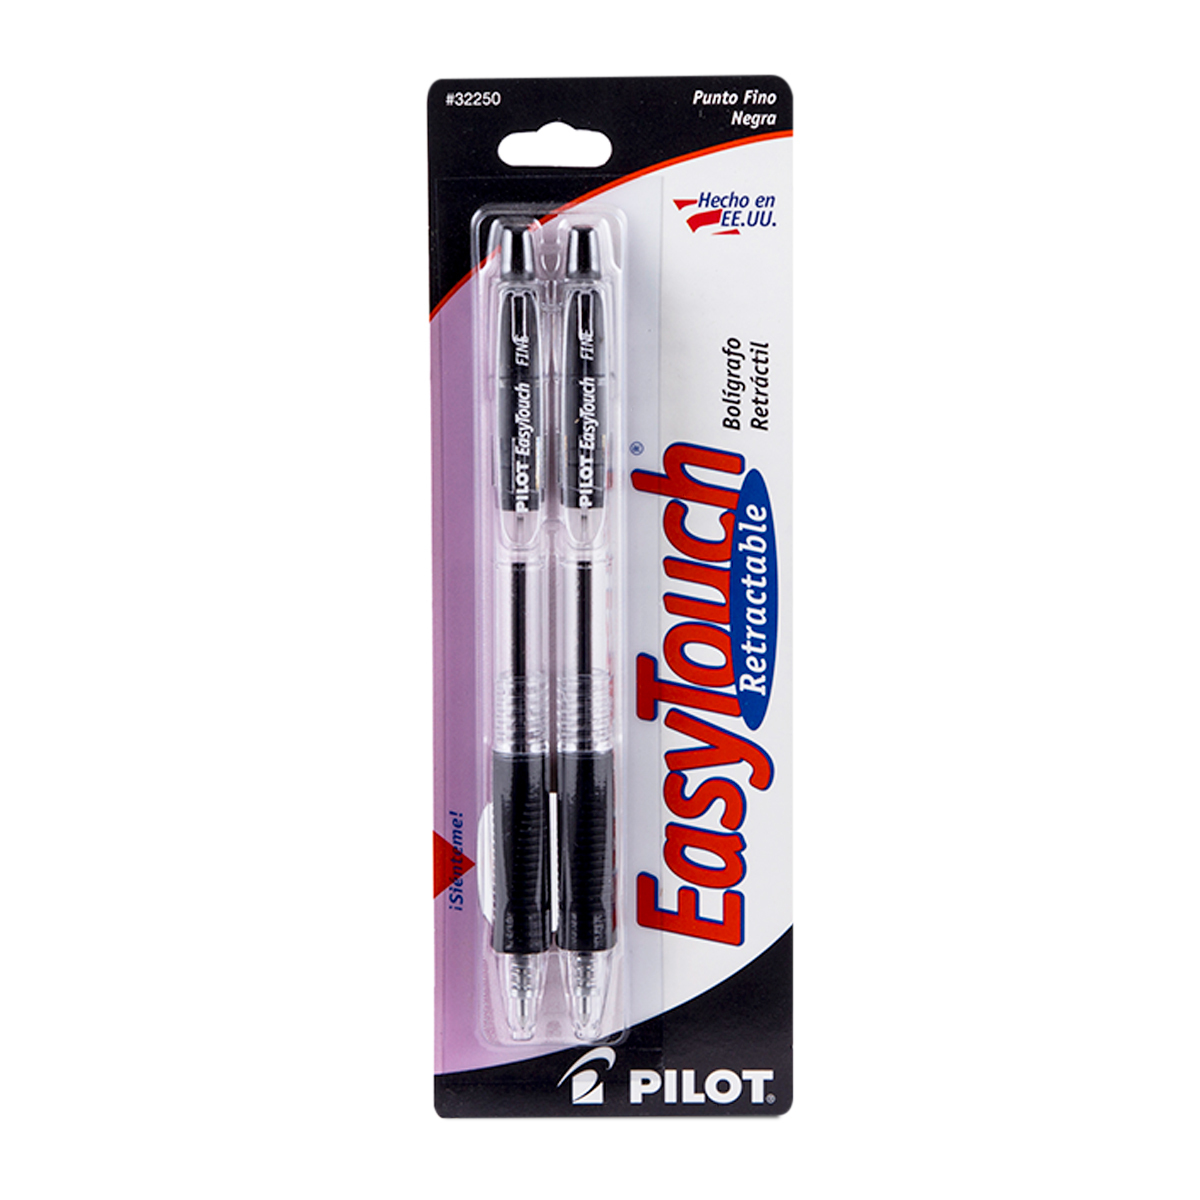 Plumas de Gel Pilot Pen EasyTouch / Punto fino / Tinta negra / 2 piezas